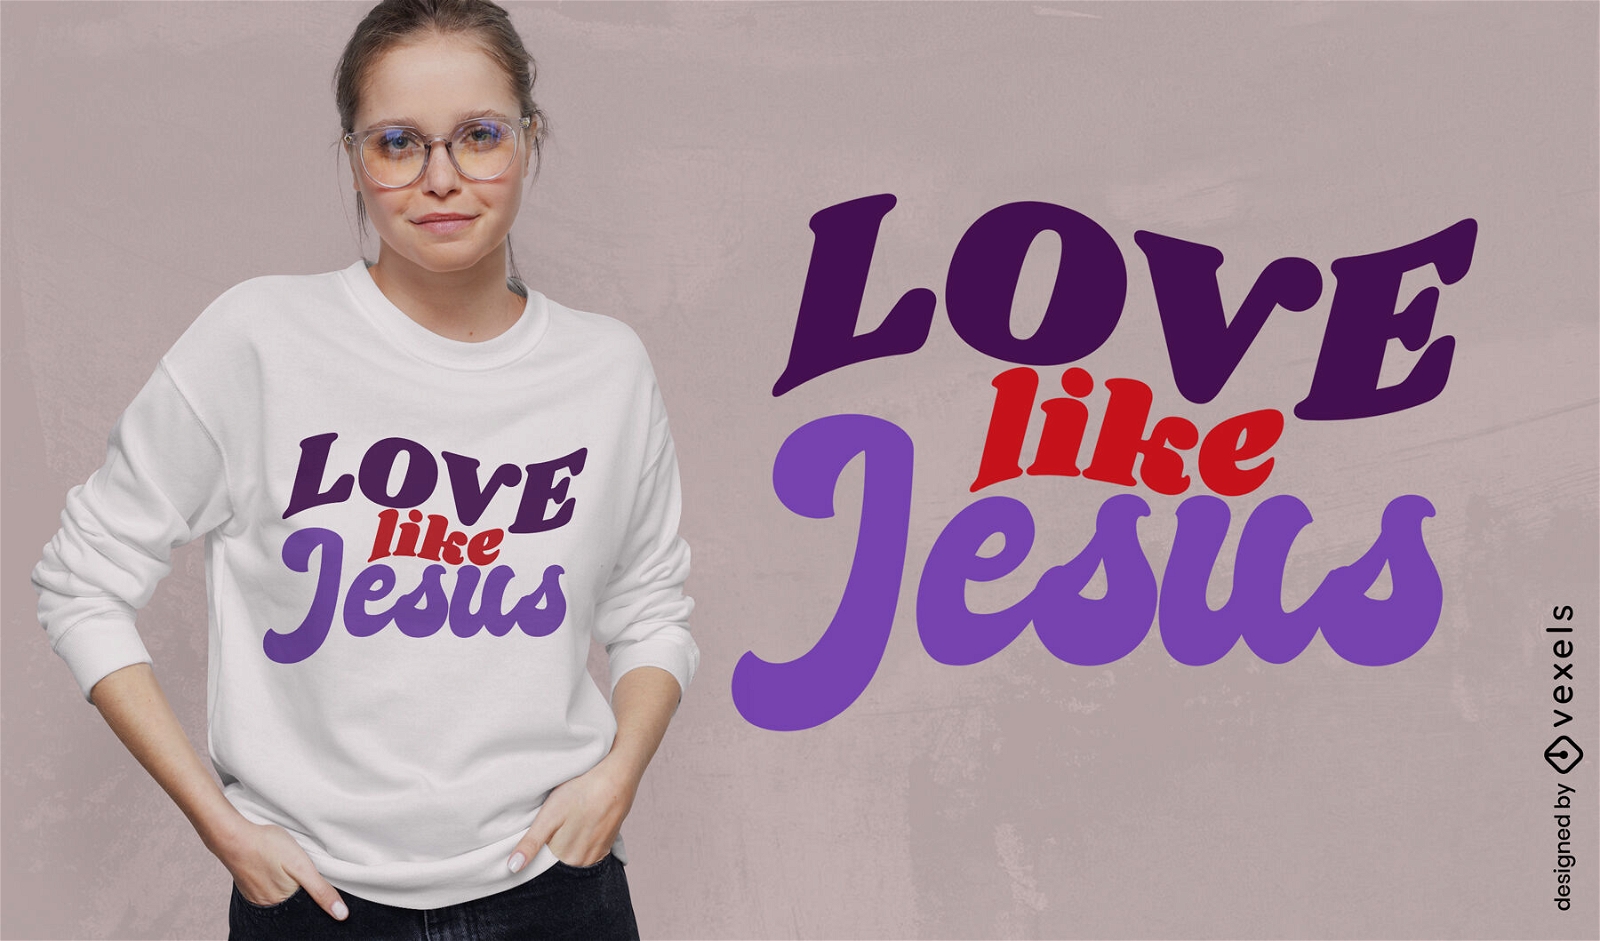 Amor como design de camiseta de jesus